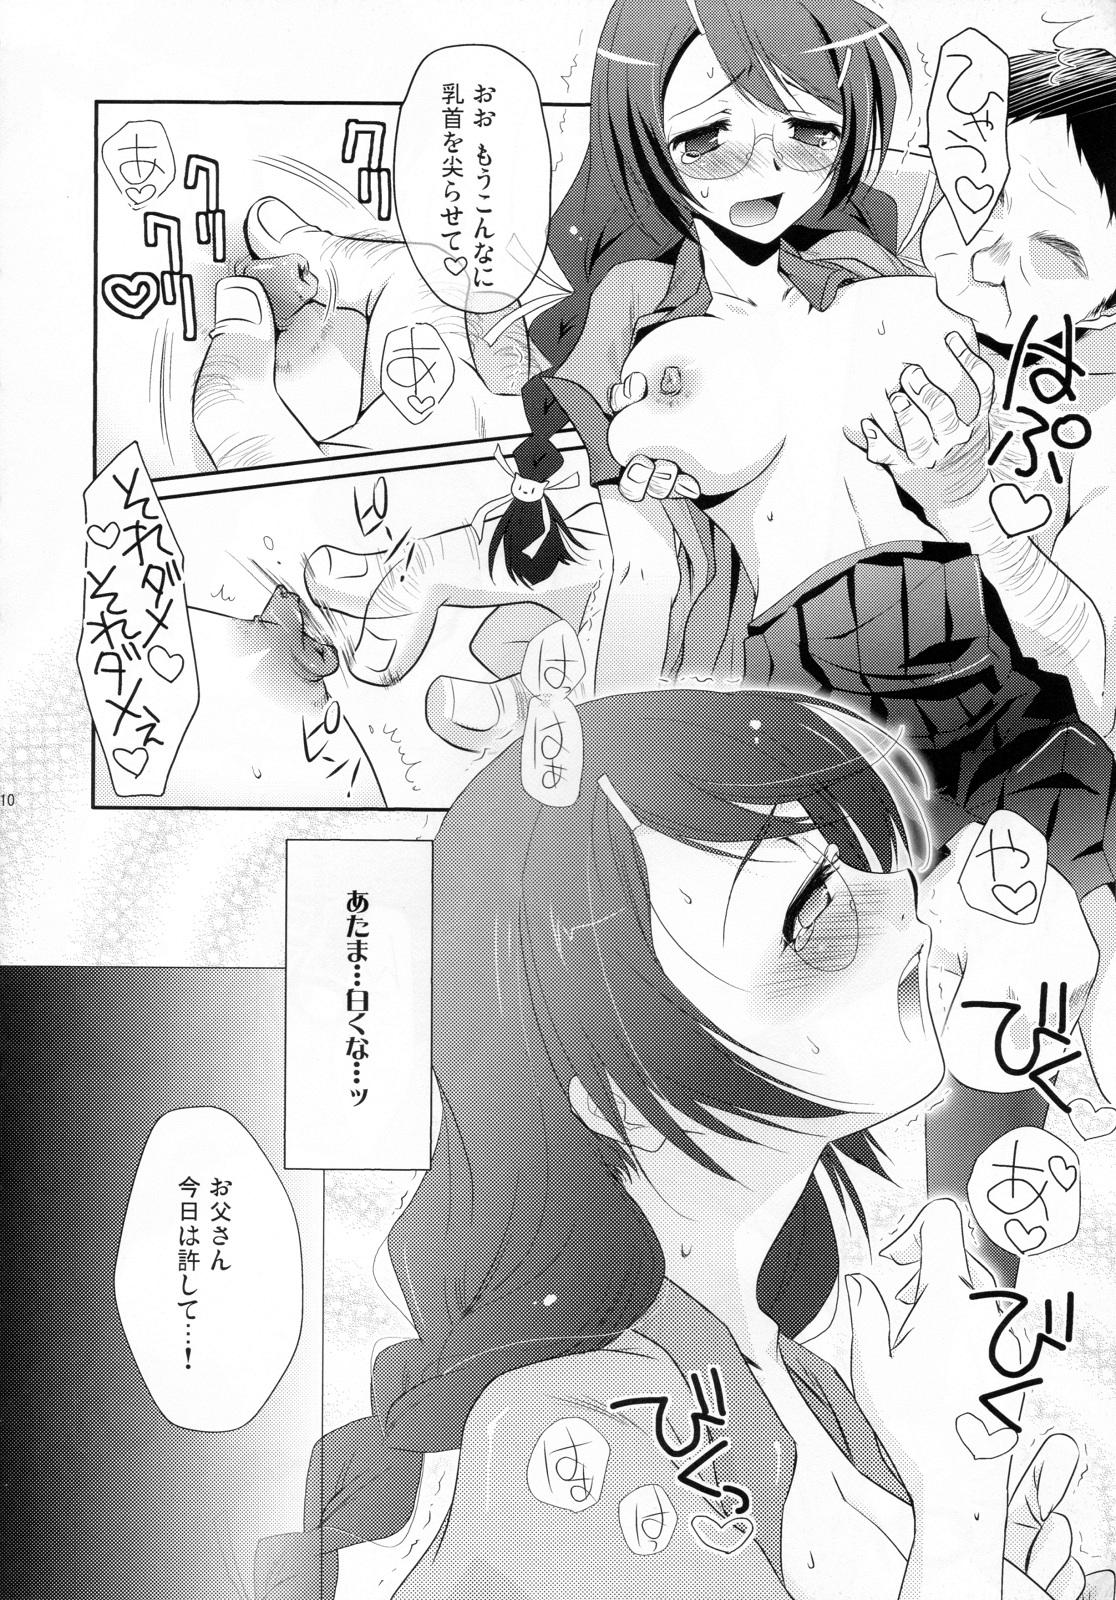 Amazing Neko no inu ma ni Nezumi wa Odoru - Bakemonogatari Hymen - Page 10